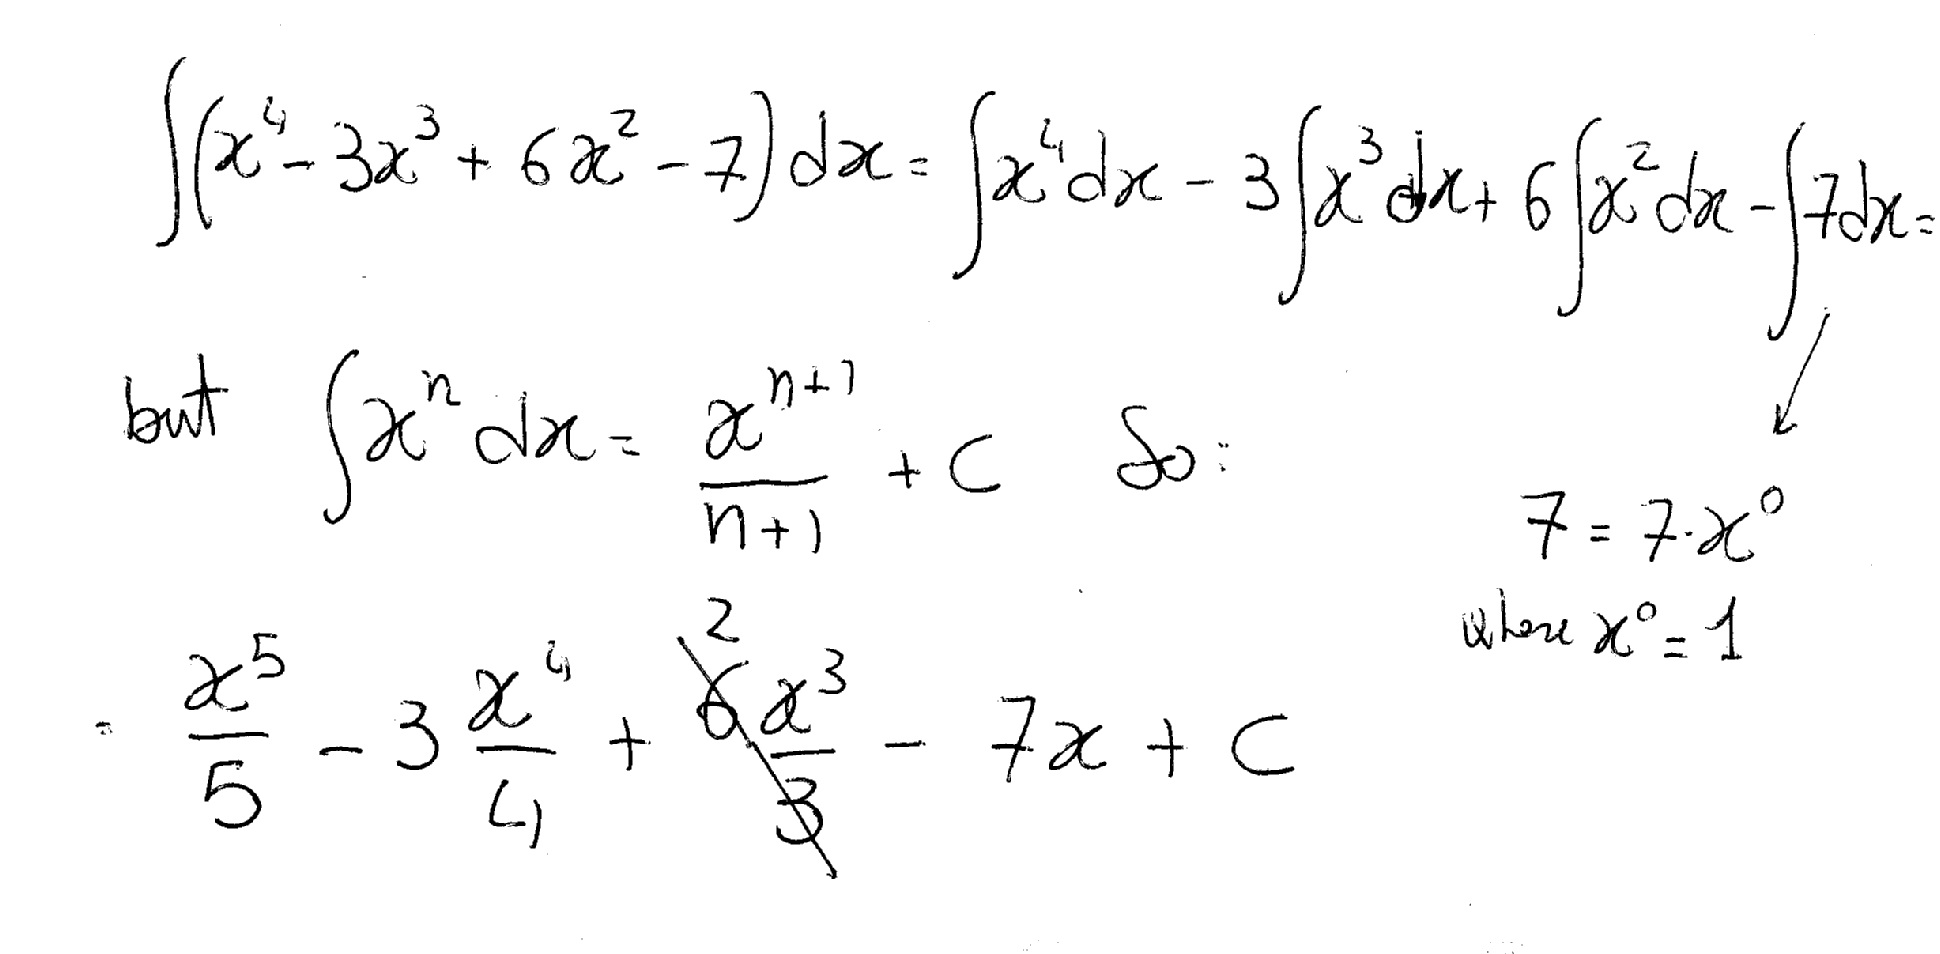 Вычислить интеграл x2 2x dx. Интеграл 4dx/(3-6x) ^6. Интегралы (2^x + 7^x)^2. 3dx/x+3 интеграл. Интеграл (7x+3) / (x:2-4x+5).